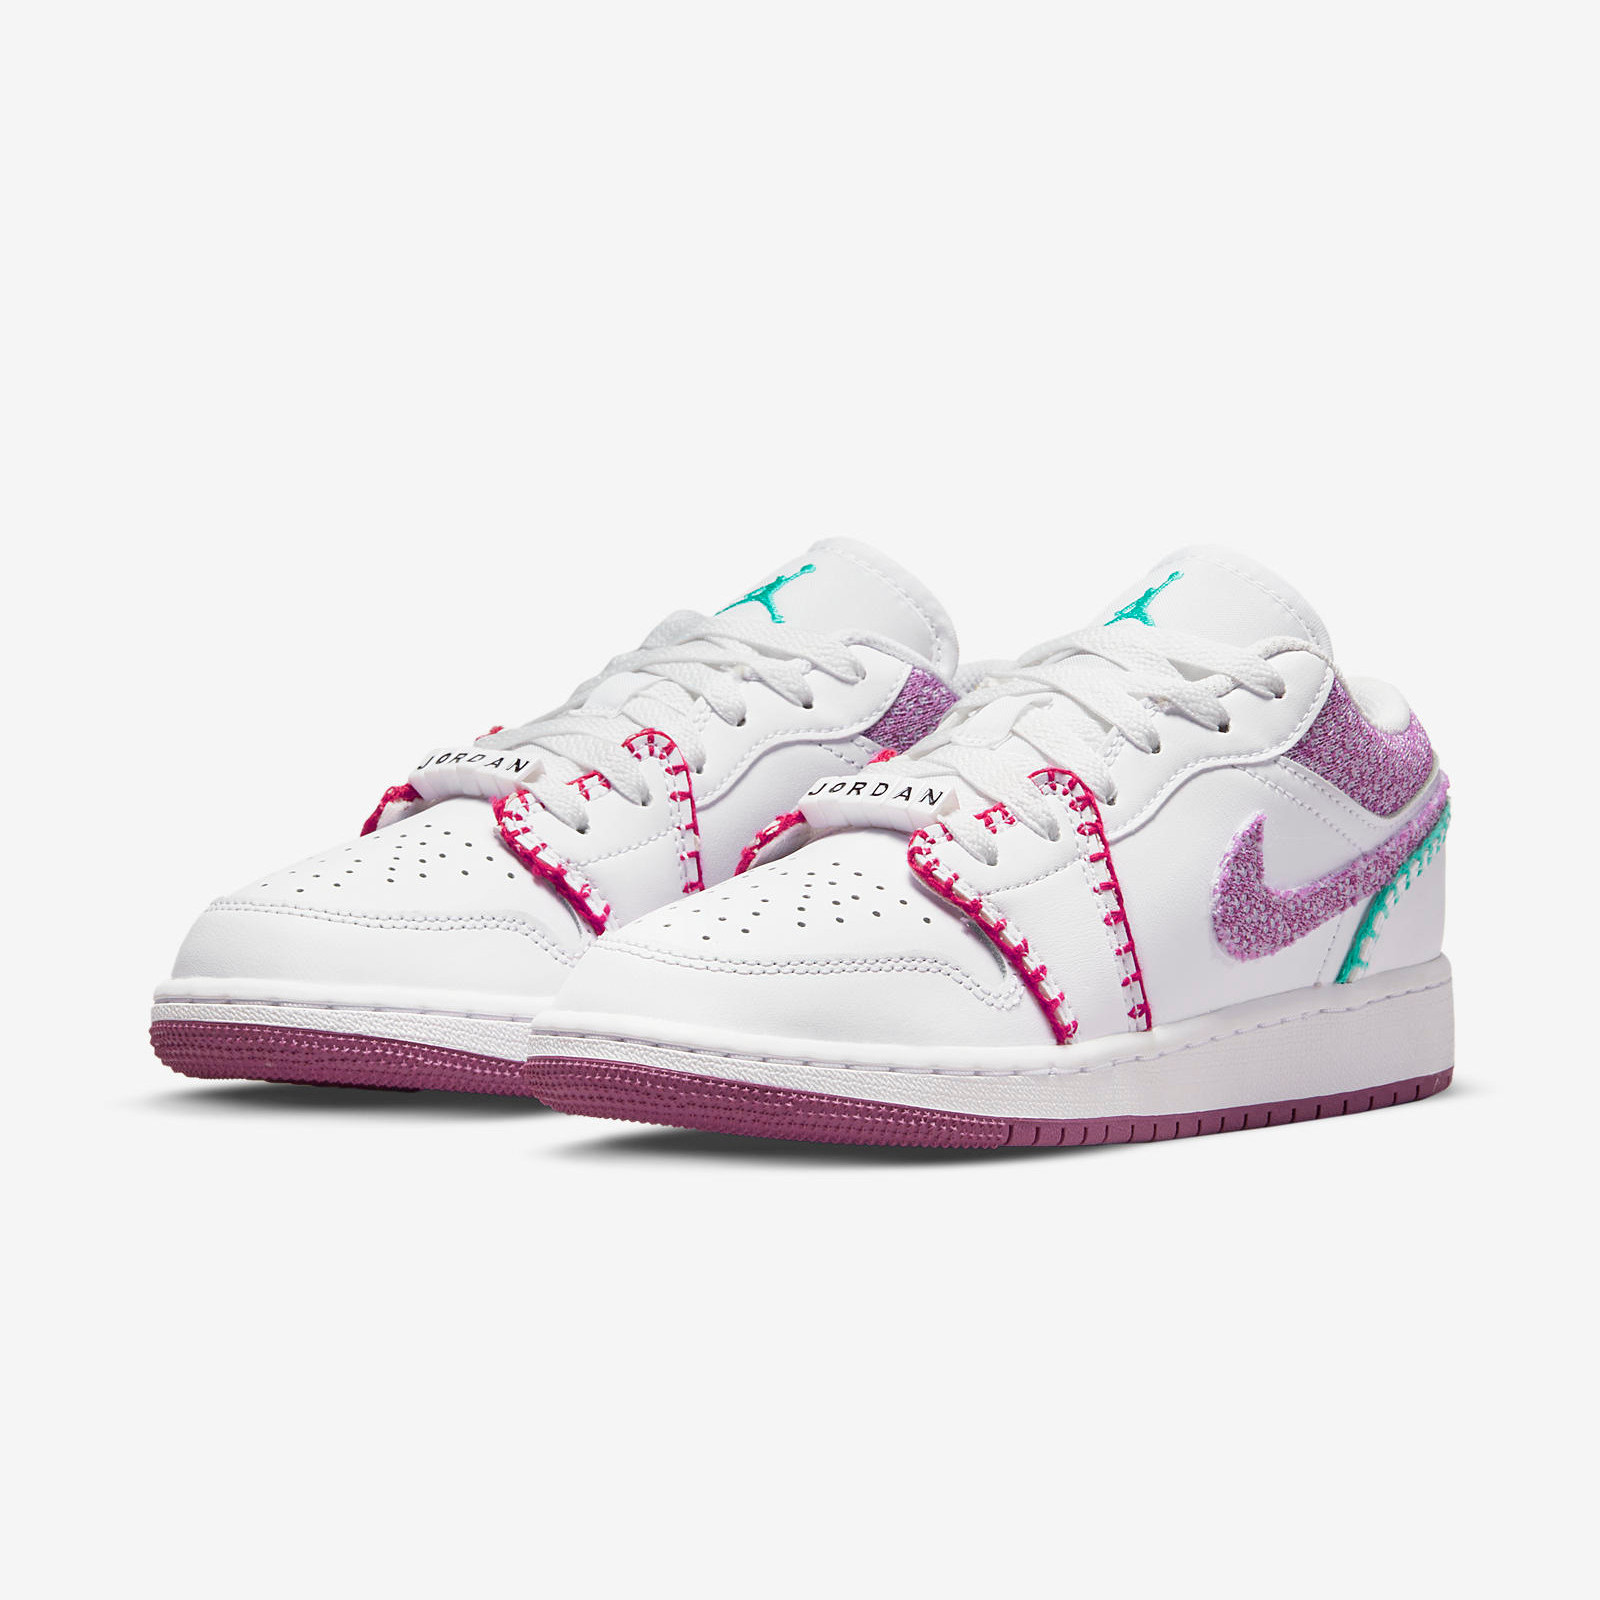 Air Jordan 1 Low GS
White / Pink / Teal